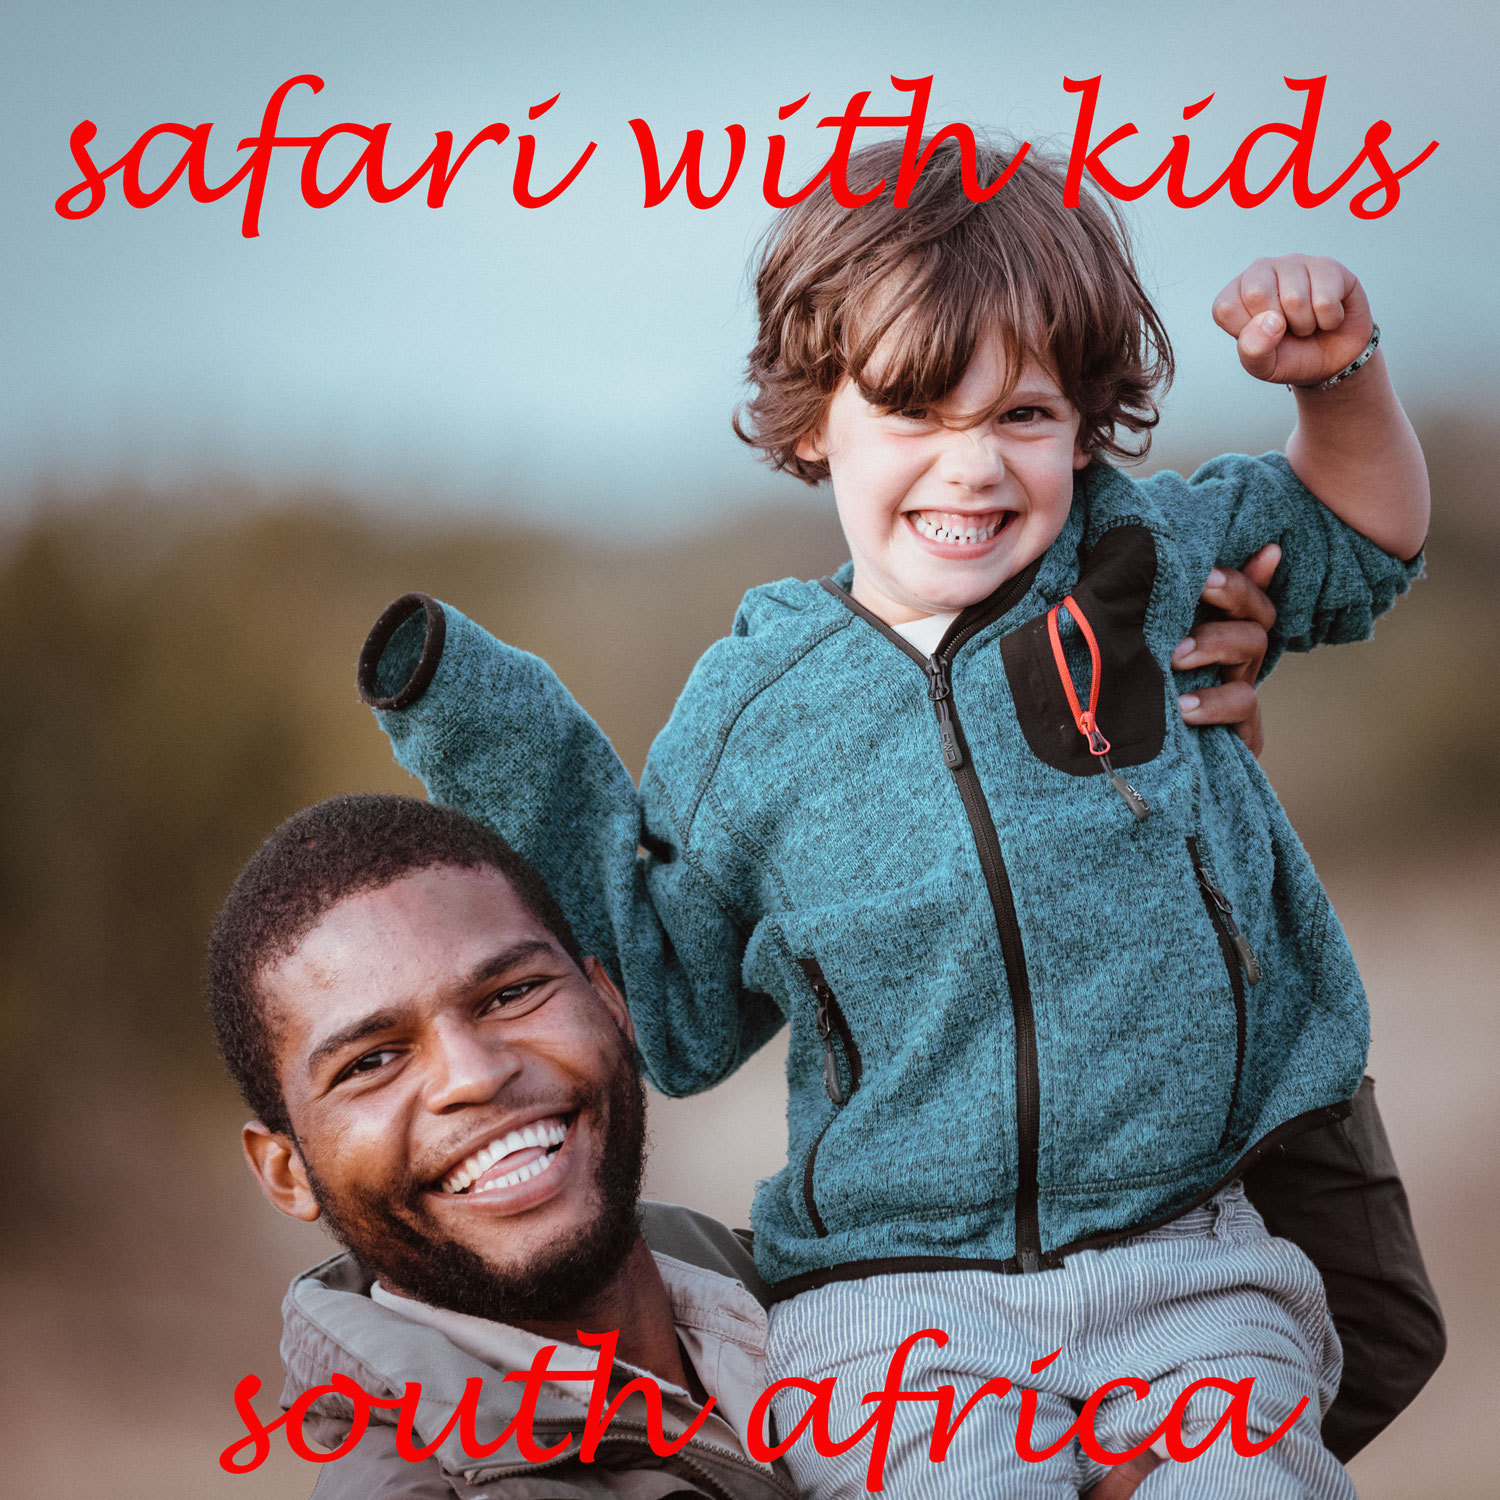 reisebericht und reiseblog - safari in südafrika mit kleinen kindern - geht das?